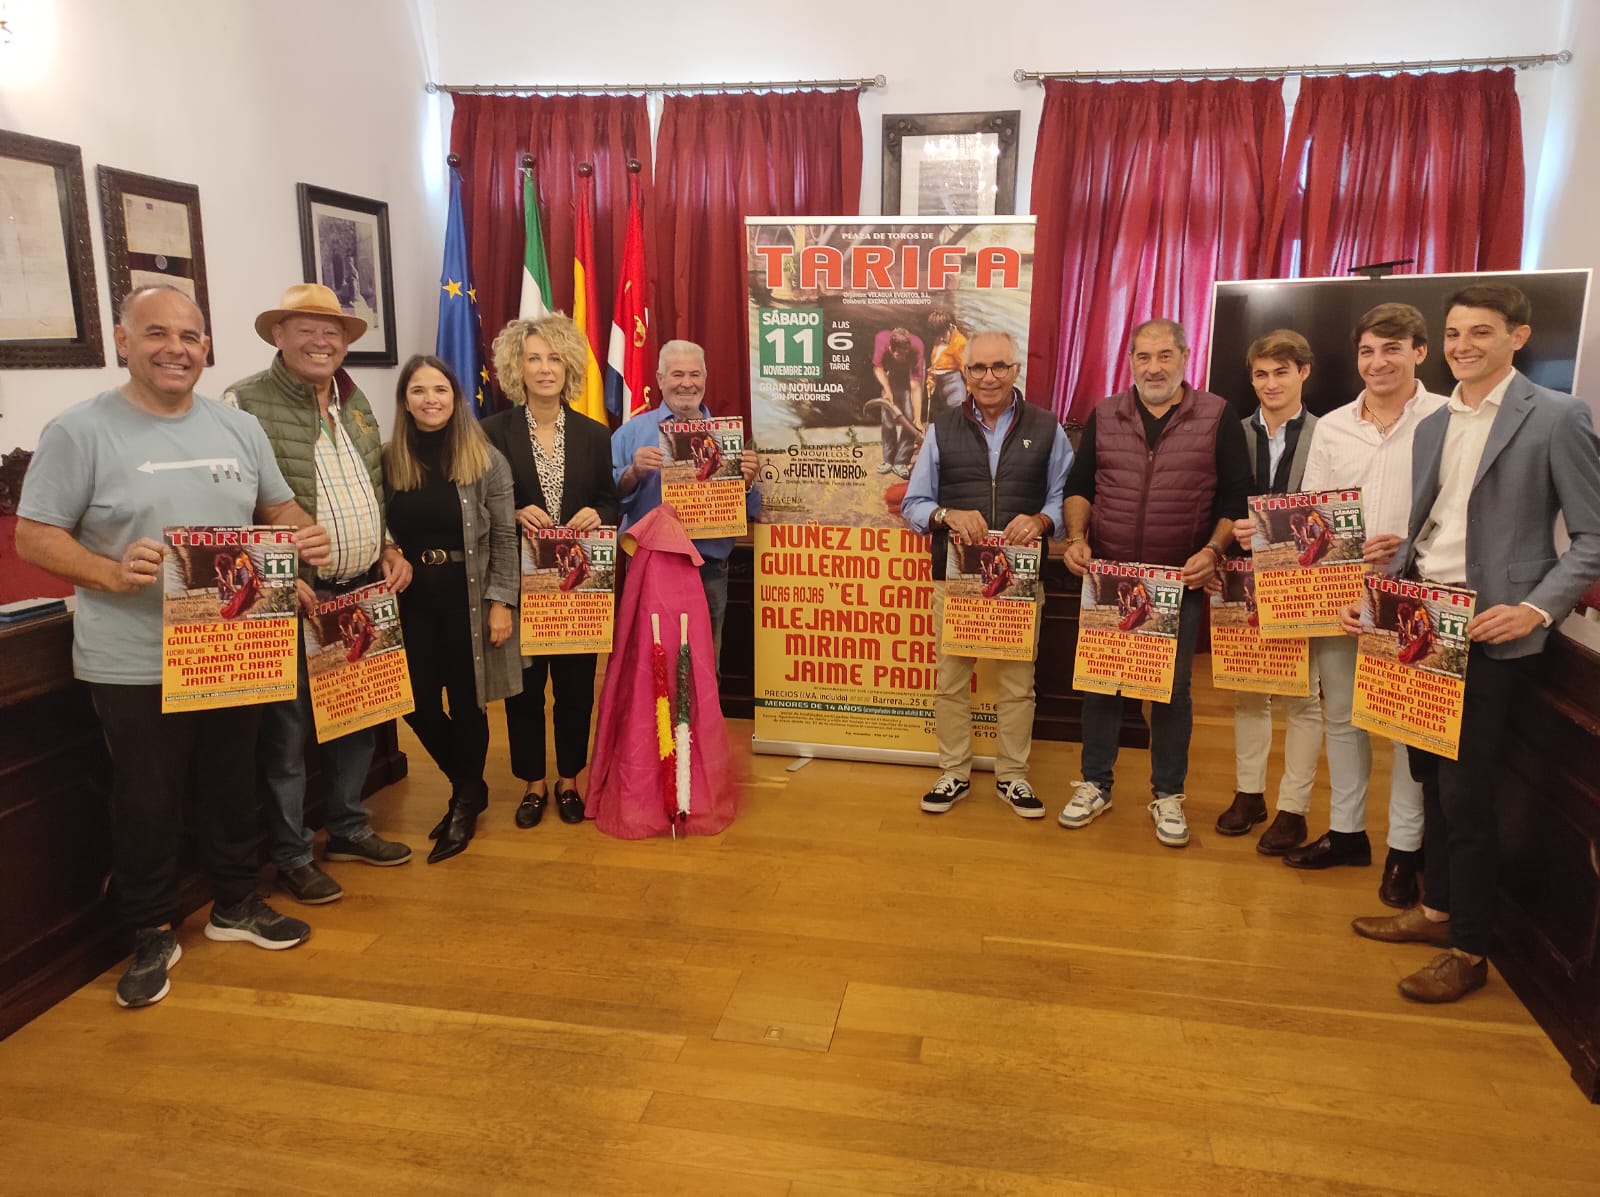 Tarifa dará oportunidad a jóvenes del Campo de Gibraltar con una novillada el próximo 11 de noviembre